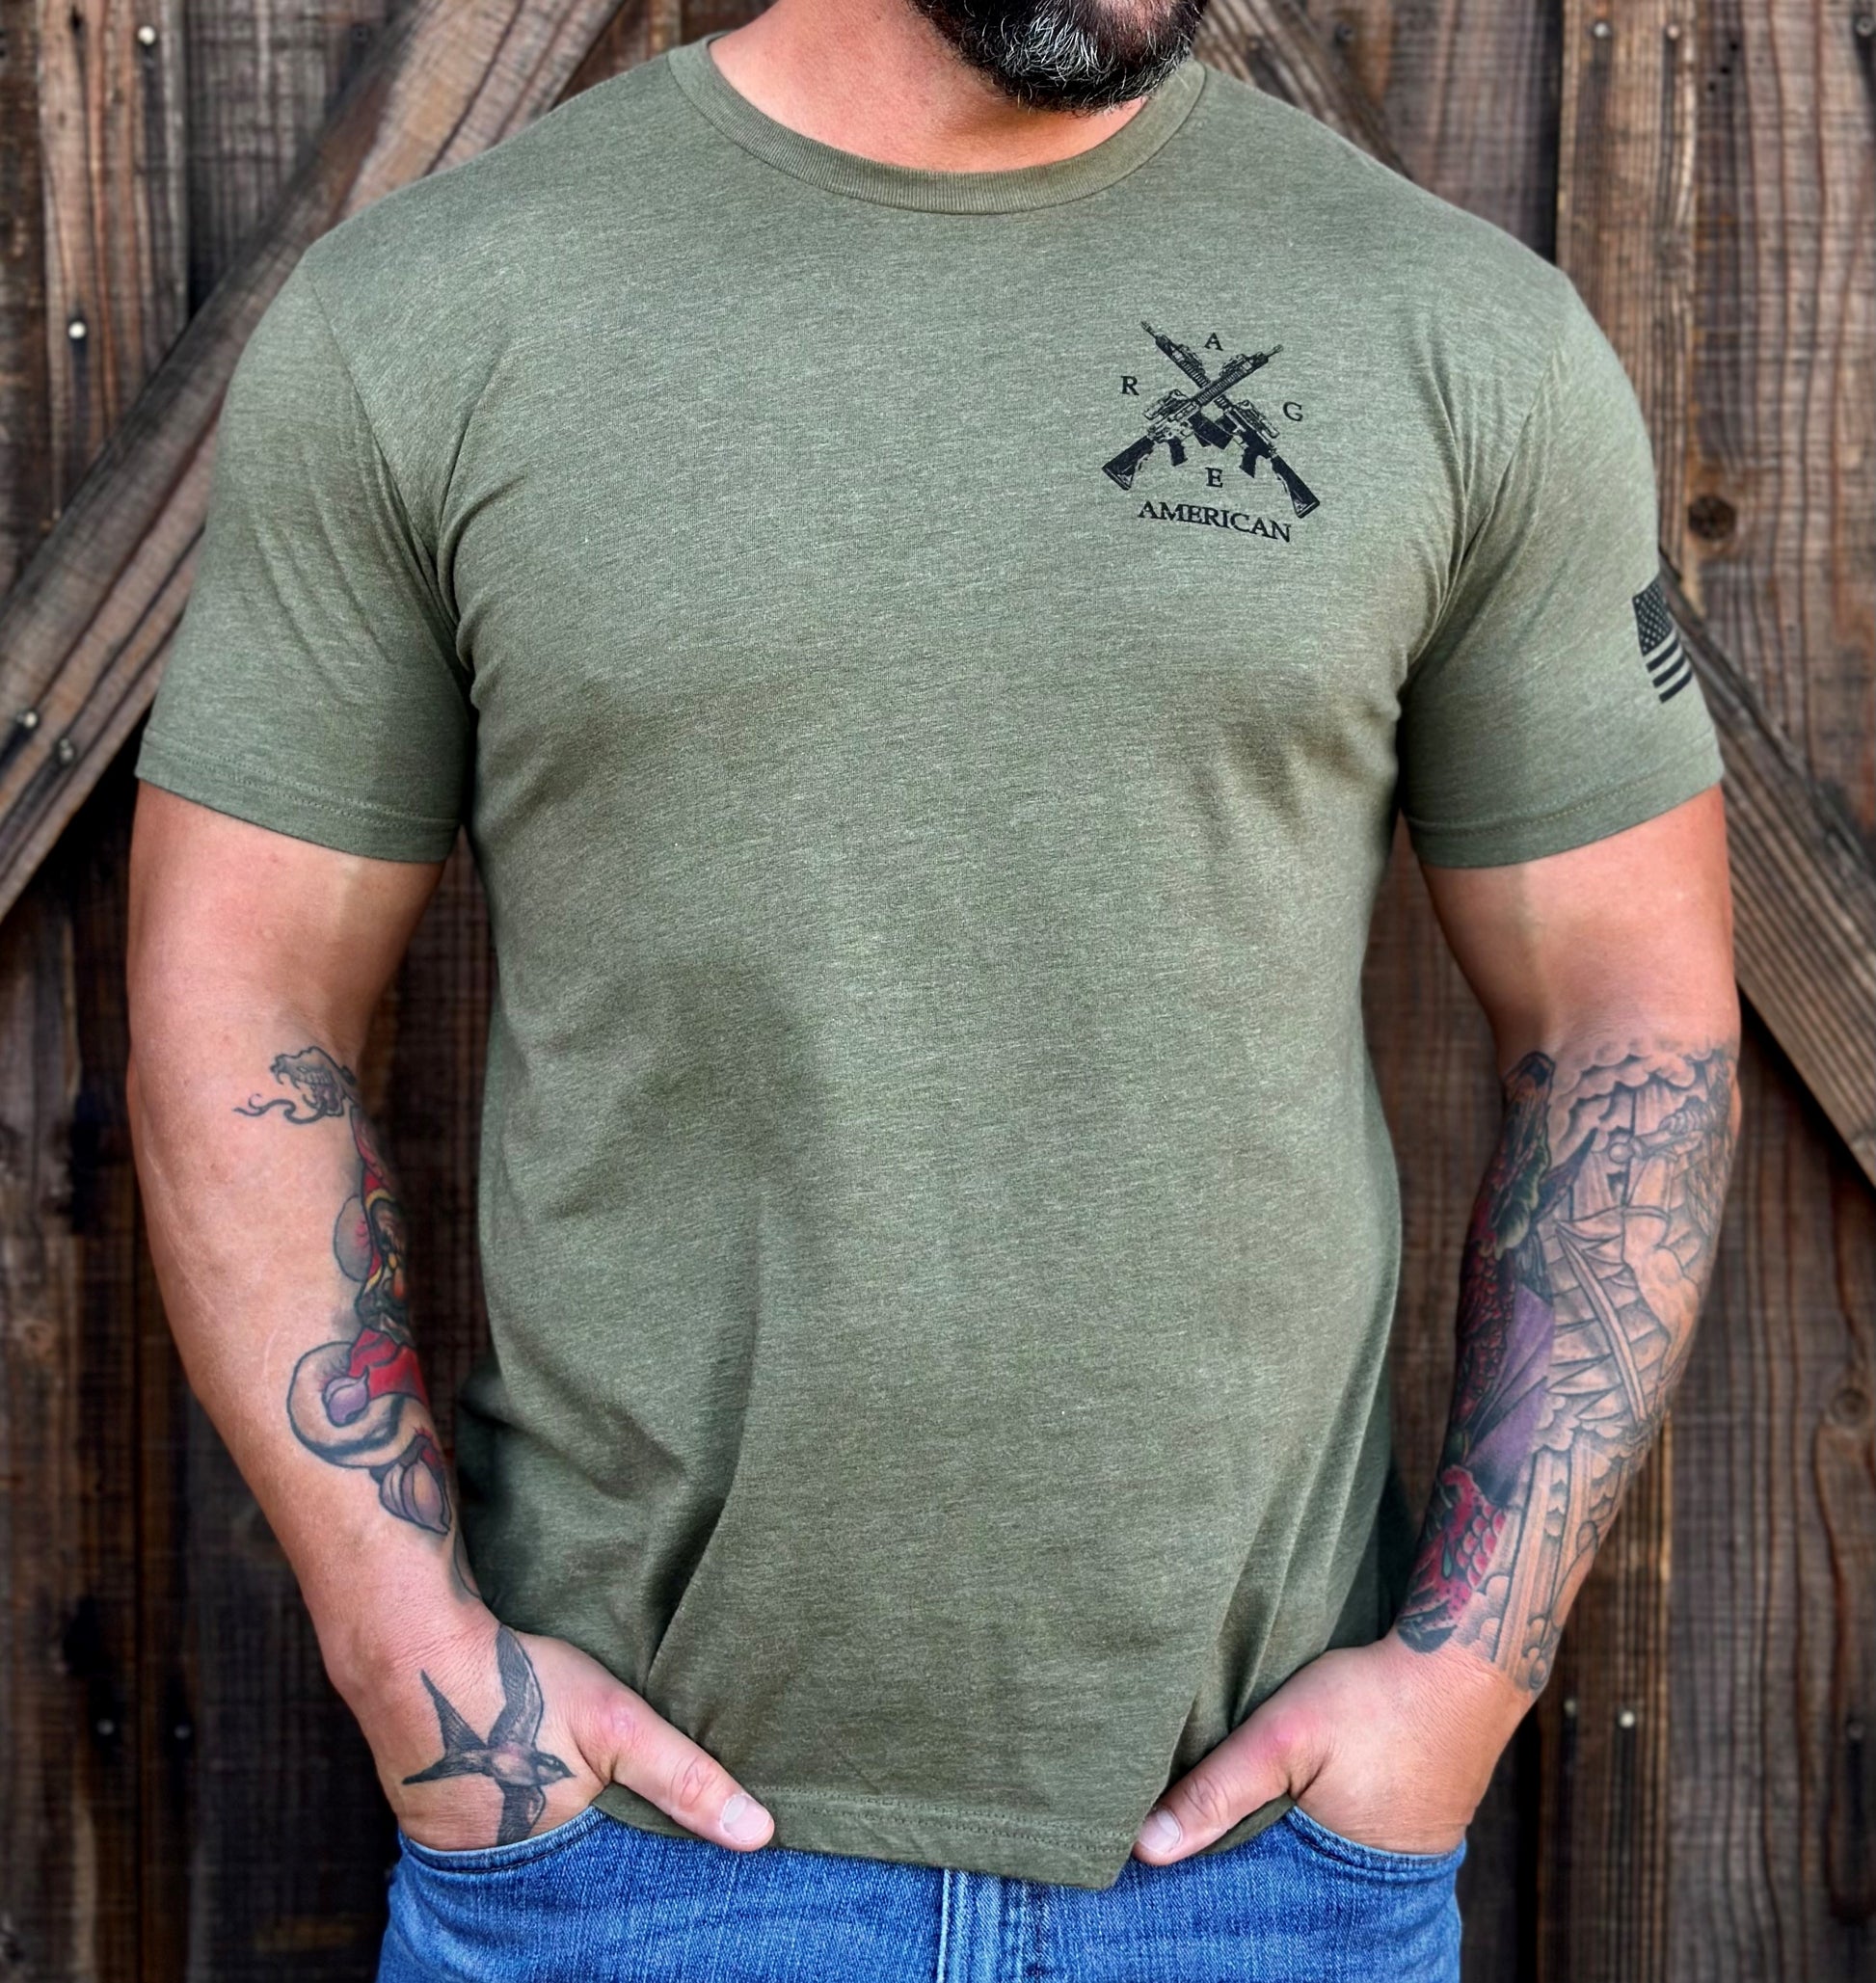 Fear The Beard (Grunt Style) T-Shirt (Size S) - Meach's Military